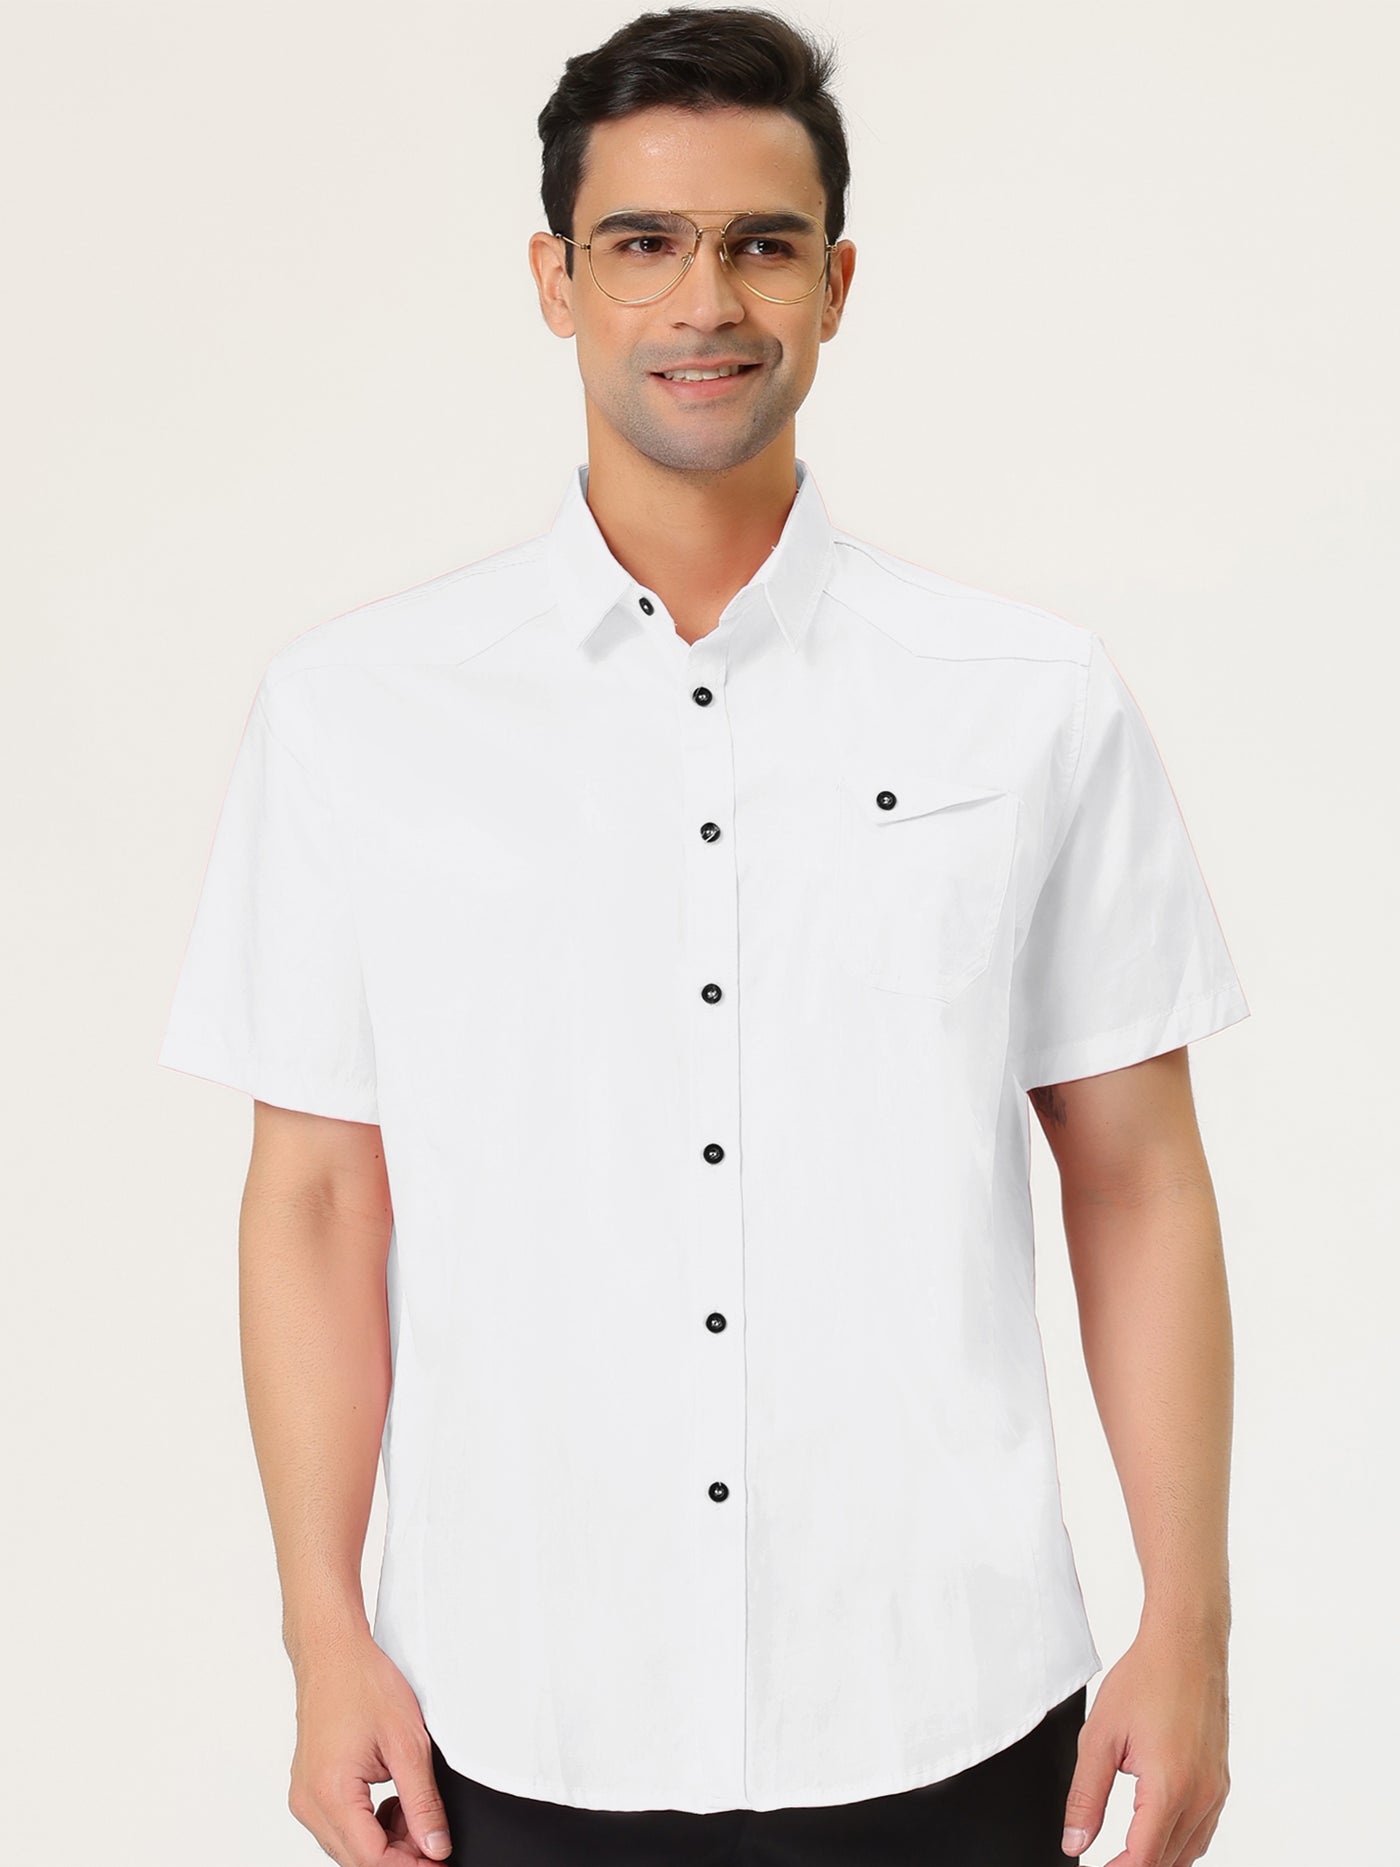 Bublédon Short Sleeve Button Down Smart Casual Work Shirt